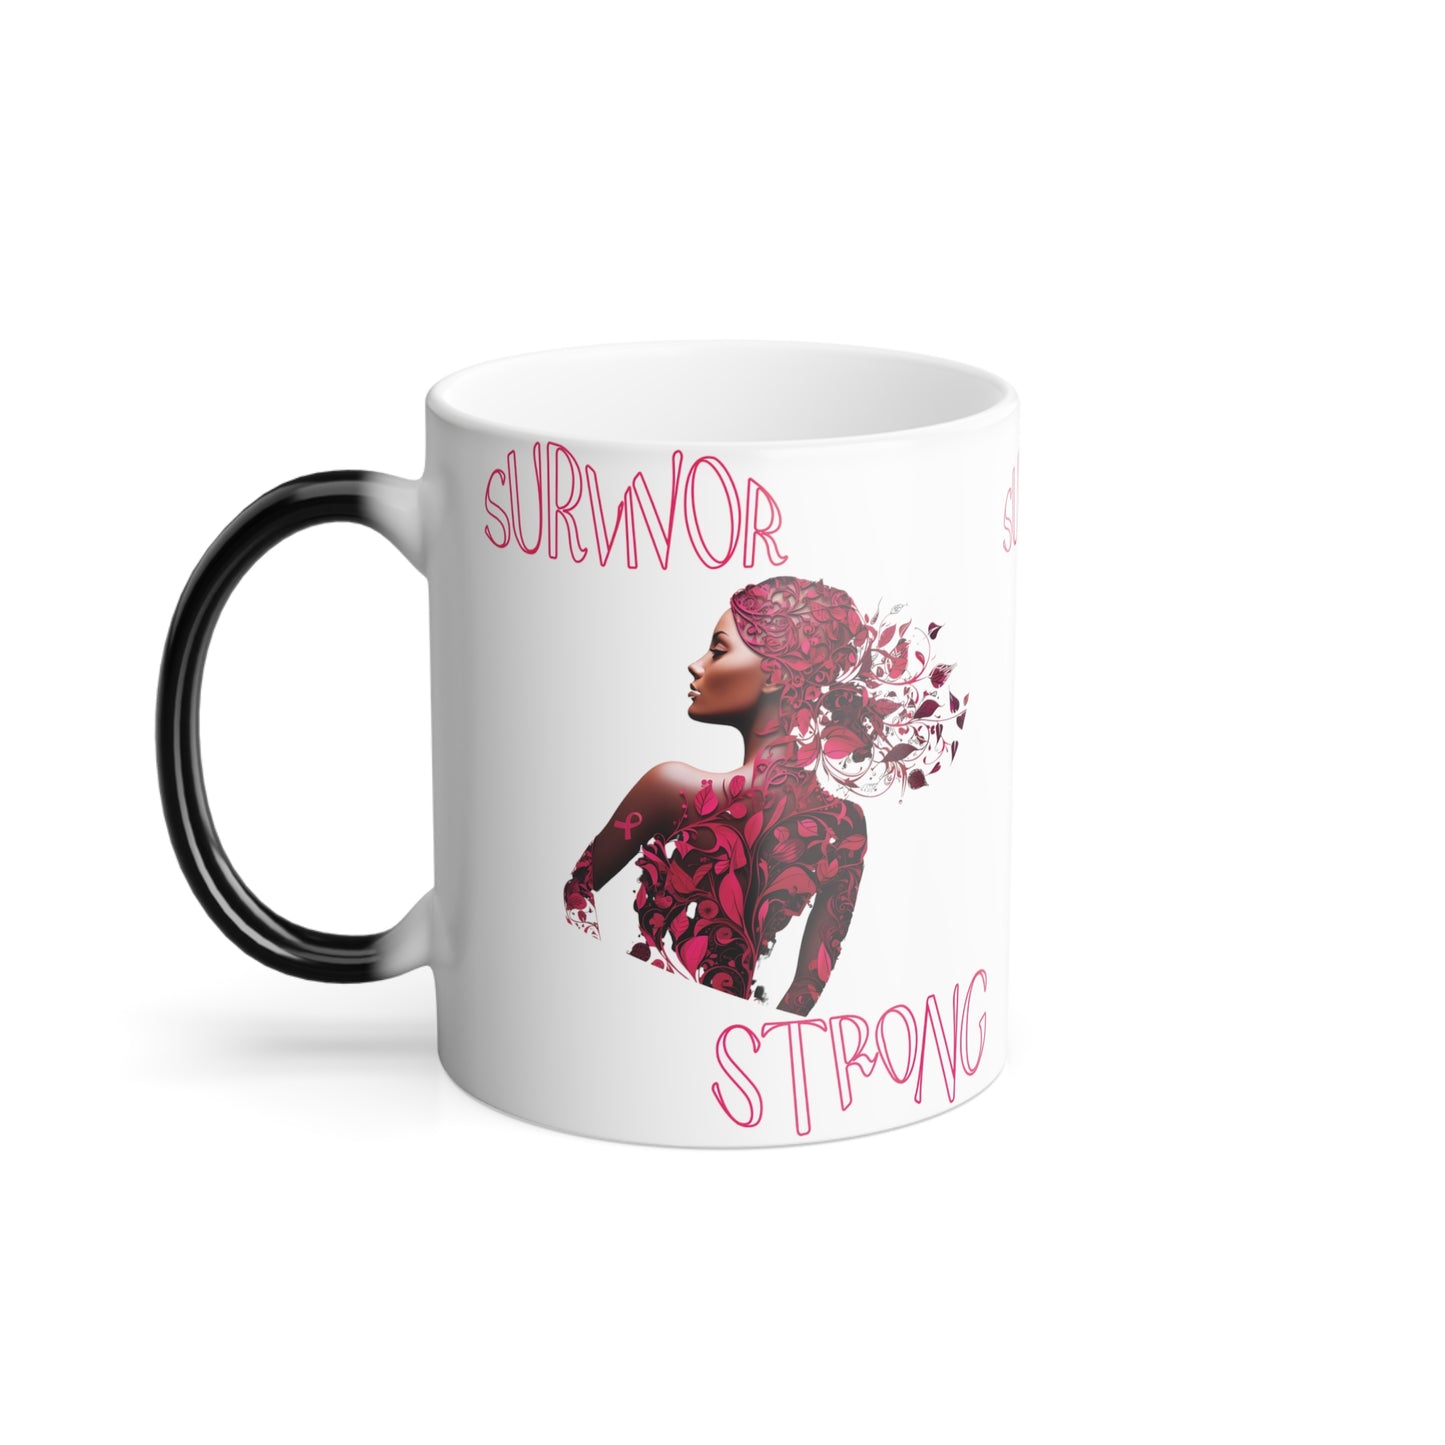 Survivor Strong Color Morphing Mug, 11oz